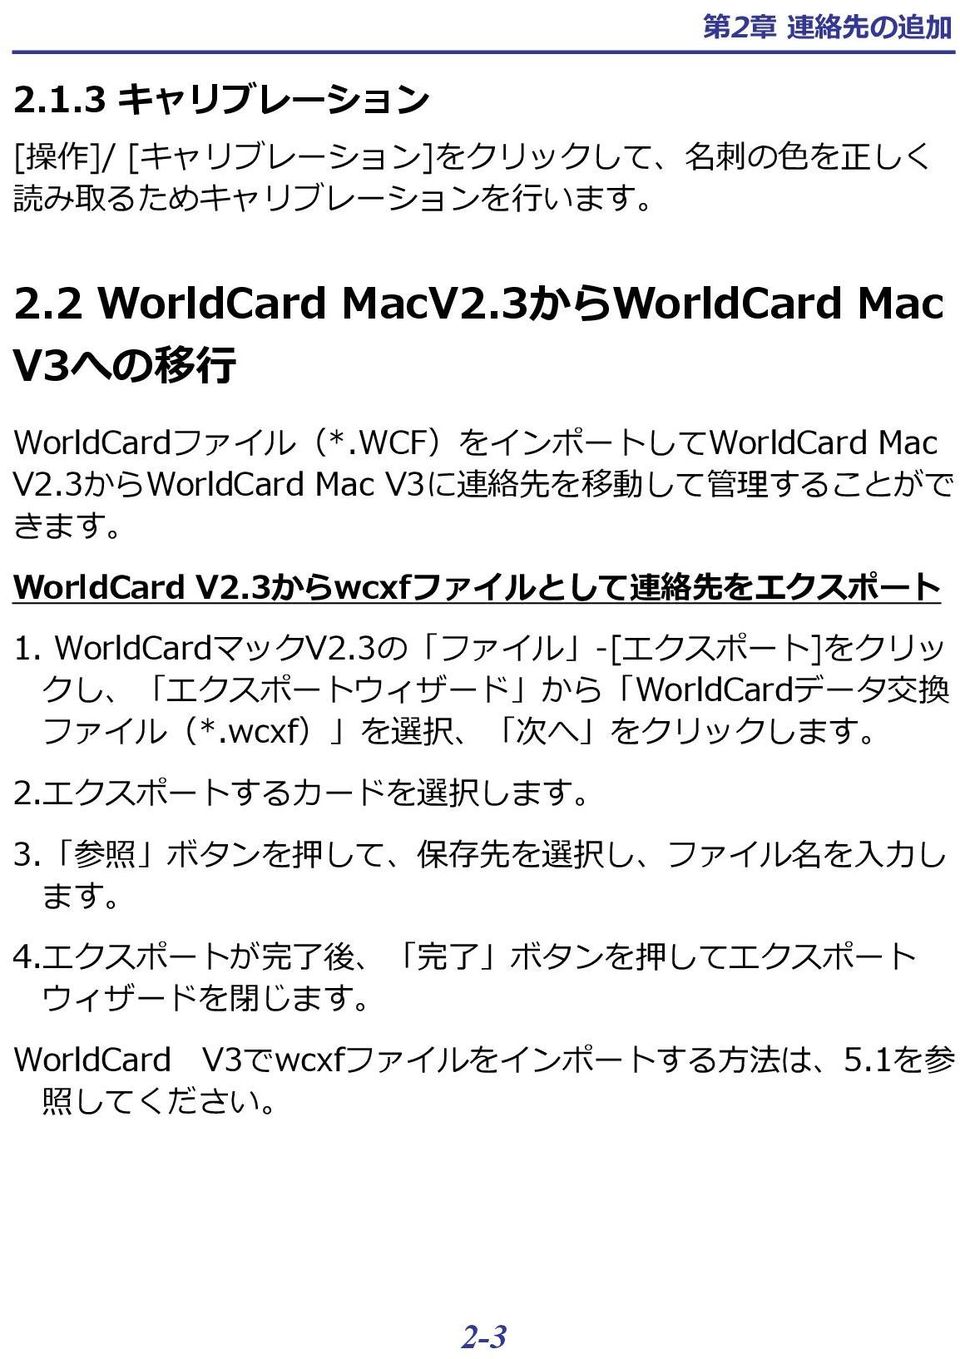 3からwcxfファイルとして 連 絡 先 をエクスポート 1. WorldCardマックV2.3の ファイル -[エクスポート]をクリッ クし エクスポートウィザード から WorldCardデータ 交 換 ファイル(*.wcxf) を 選 択 次 へ をクリックします 2.